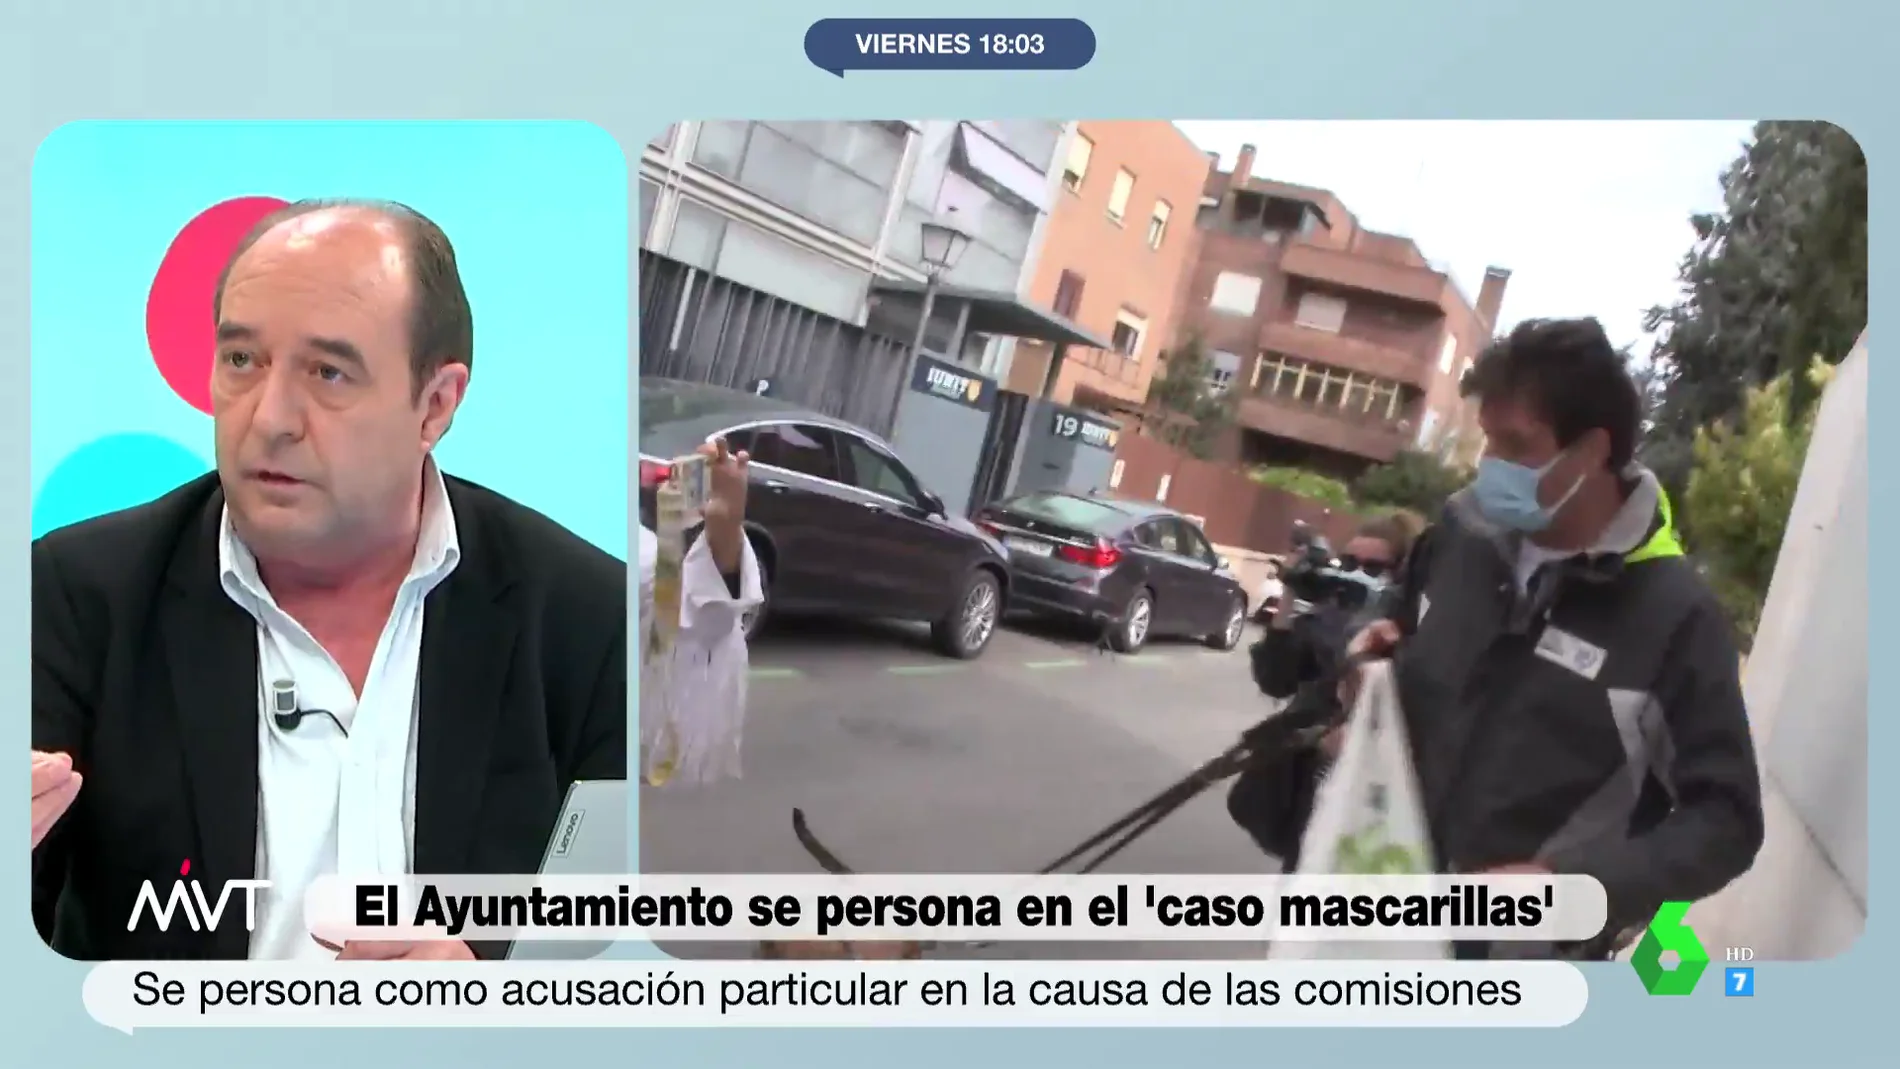 Jesús Maraña, sobre la actitud del Ayuntamiento de Madrid ante la presunta 'estafa' de Luis Medina: "¿Cómo es posible que no denunciaran?"